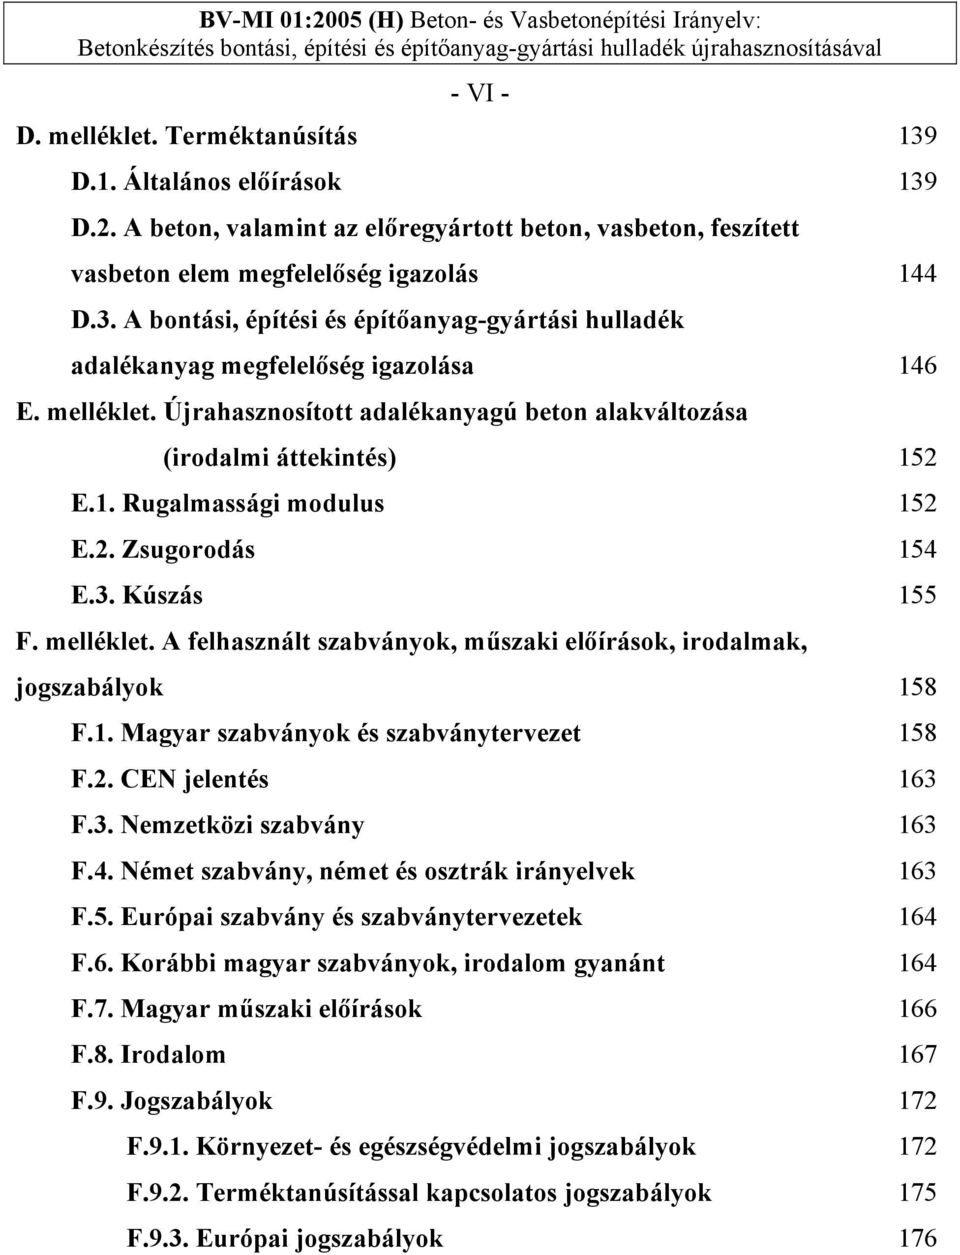 A felhasznált szabványok, műszaki előírások, irodalmak, jogszabályok 158 F.1. Magyar szabványok és szabványtervezet 158 F.2. CEN jelentés 163 F.3. Nemzetközi szabvány 163 F.4.